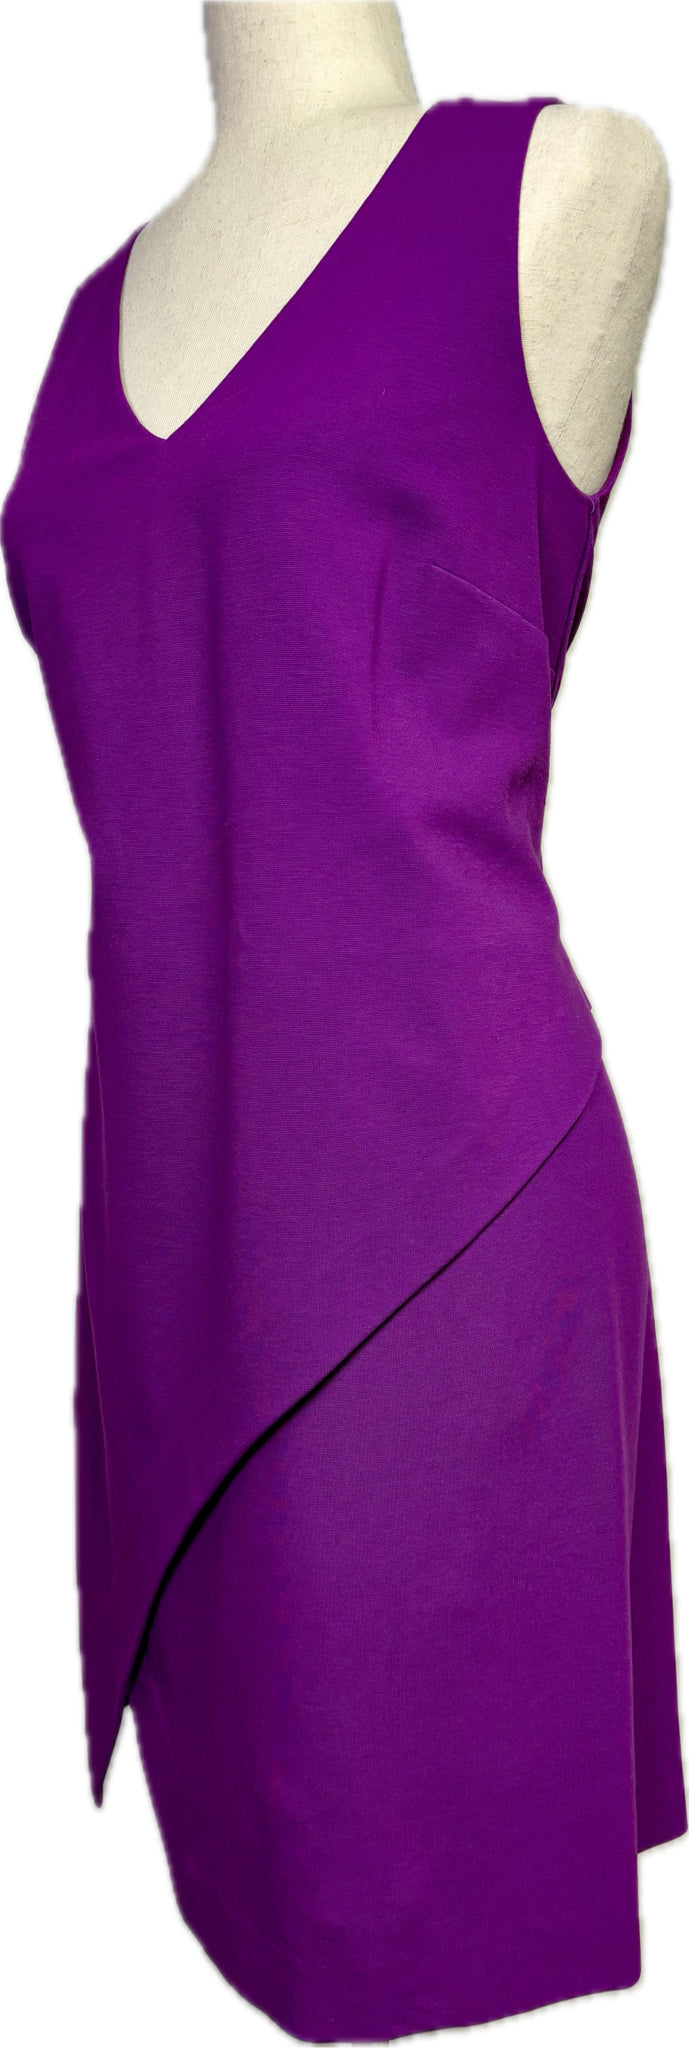 Diane Von Furstenberg Knit Dress